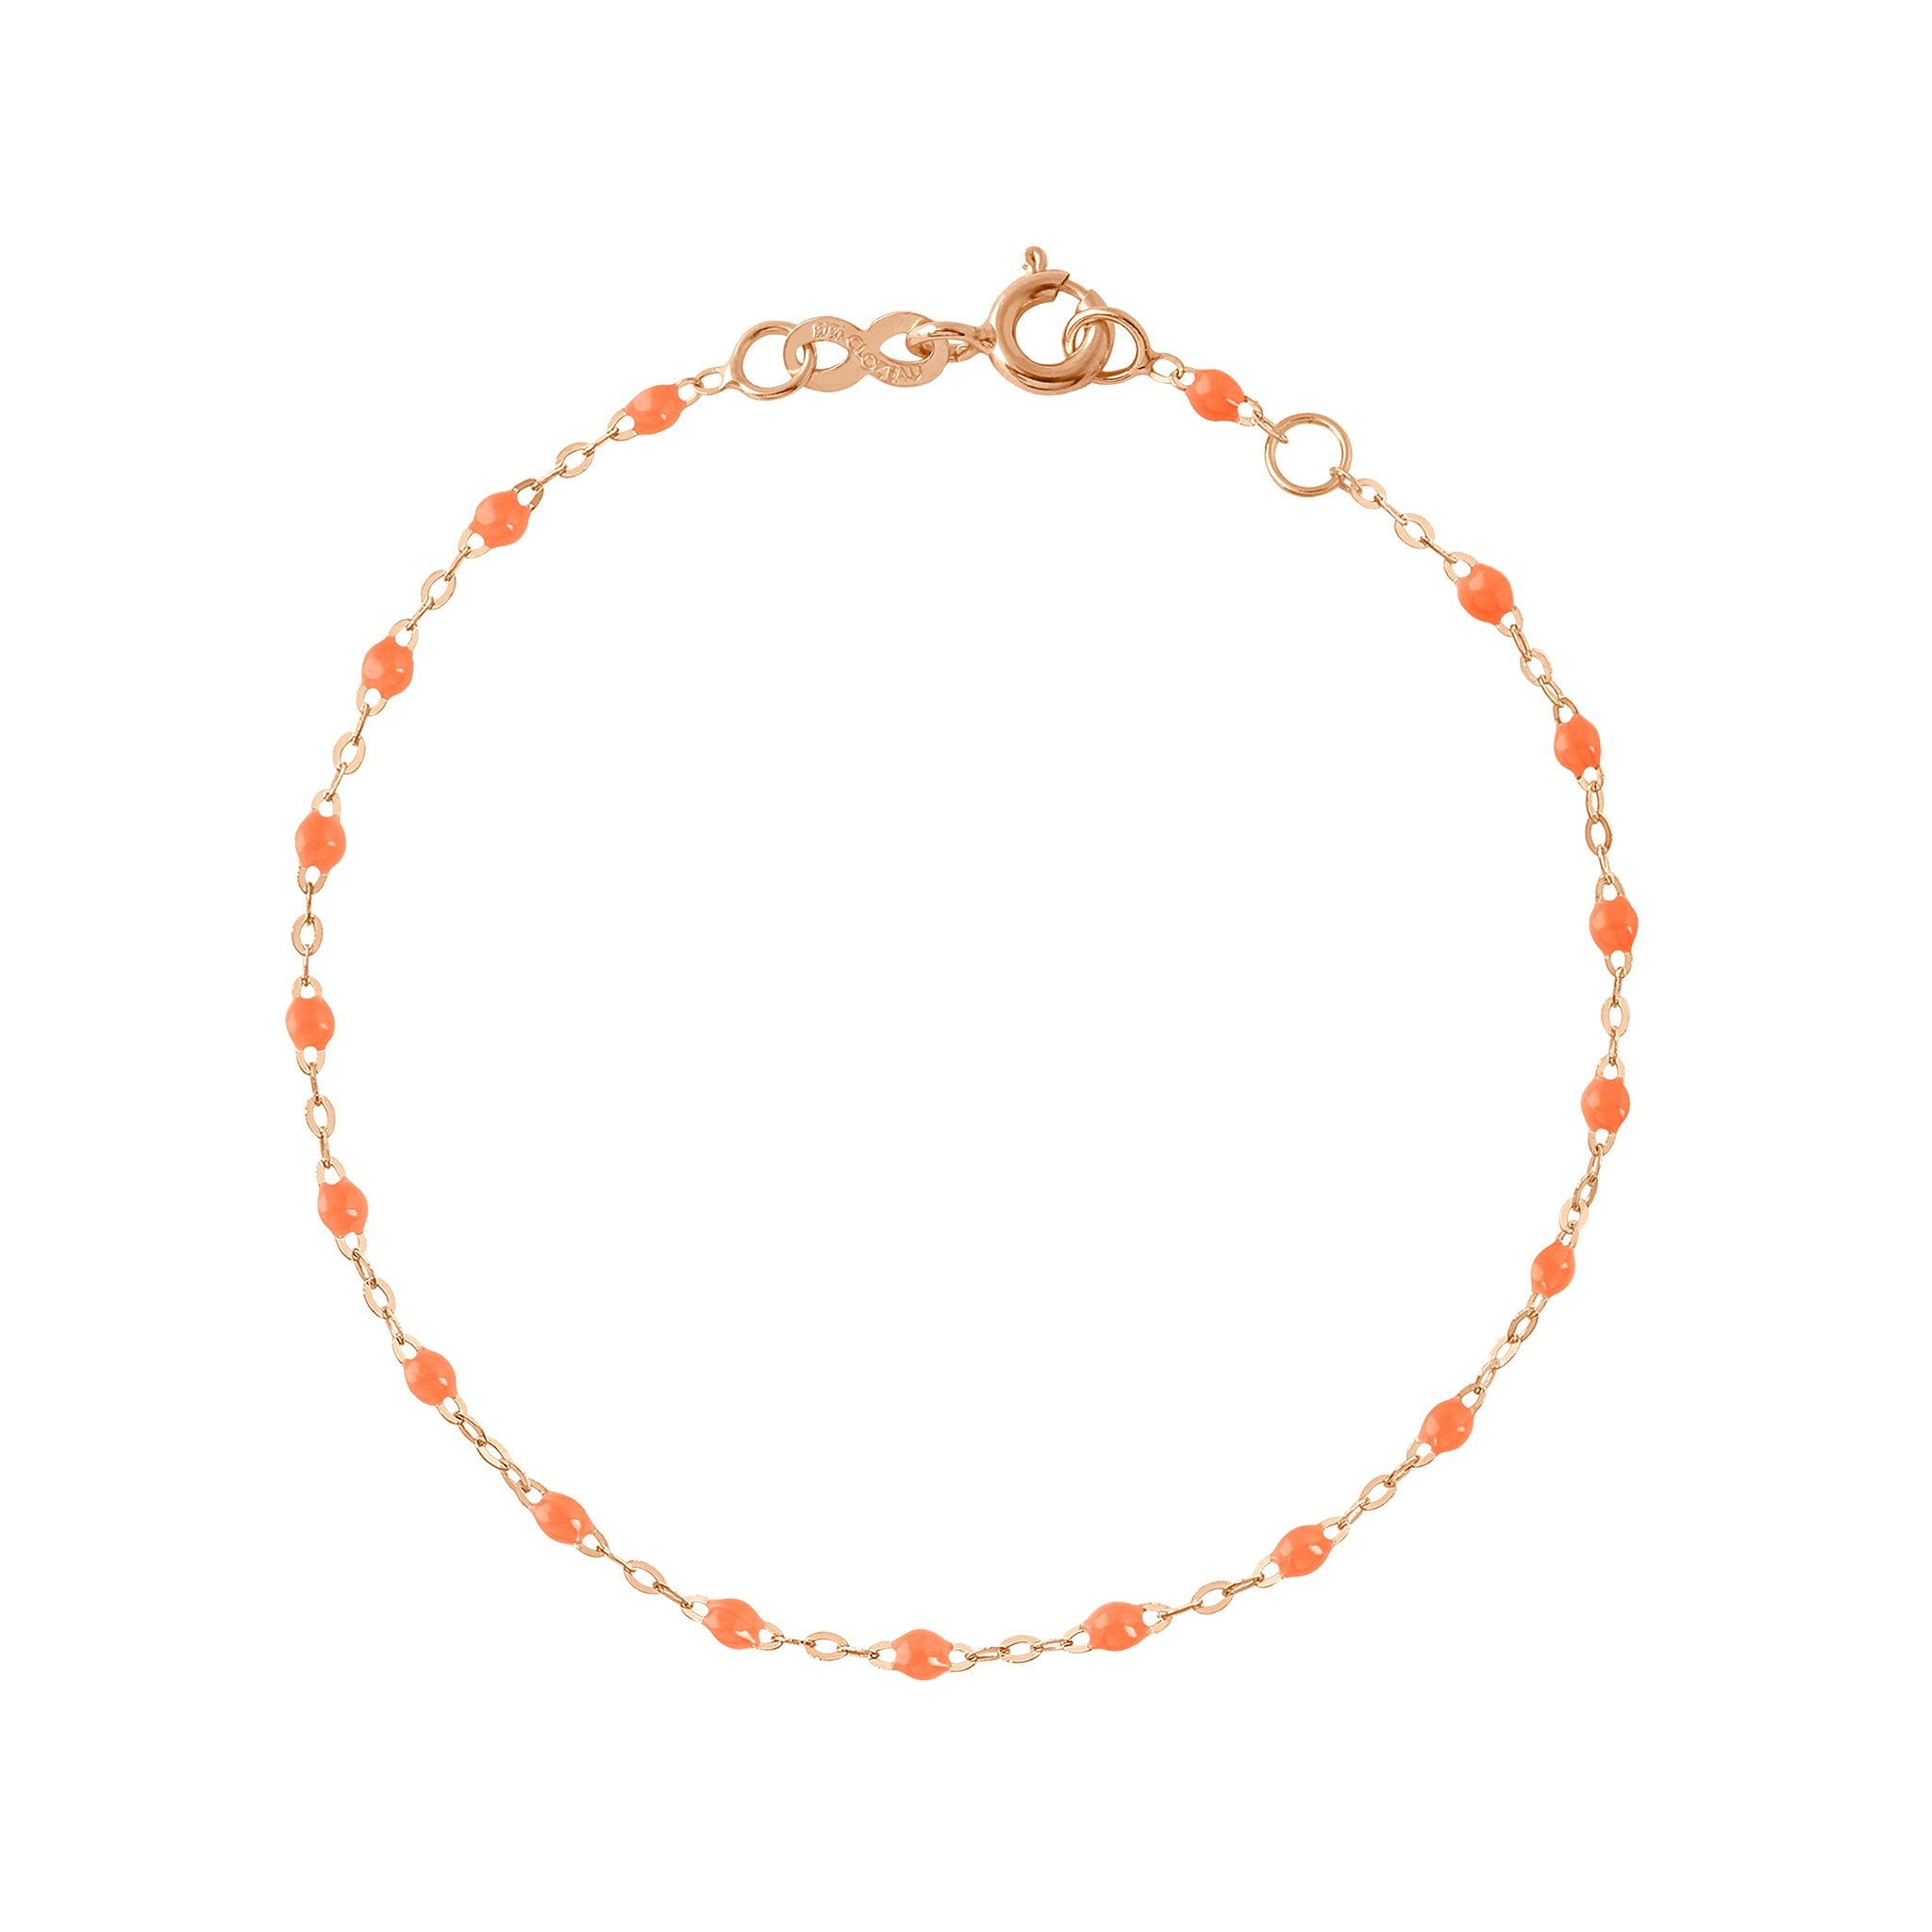 Bracelet orange fluo Classique Gigi, or rose, 18 cm